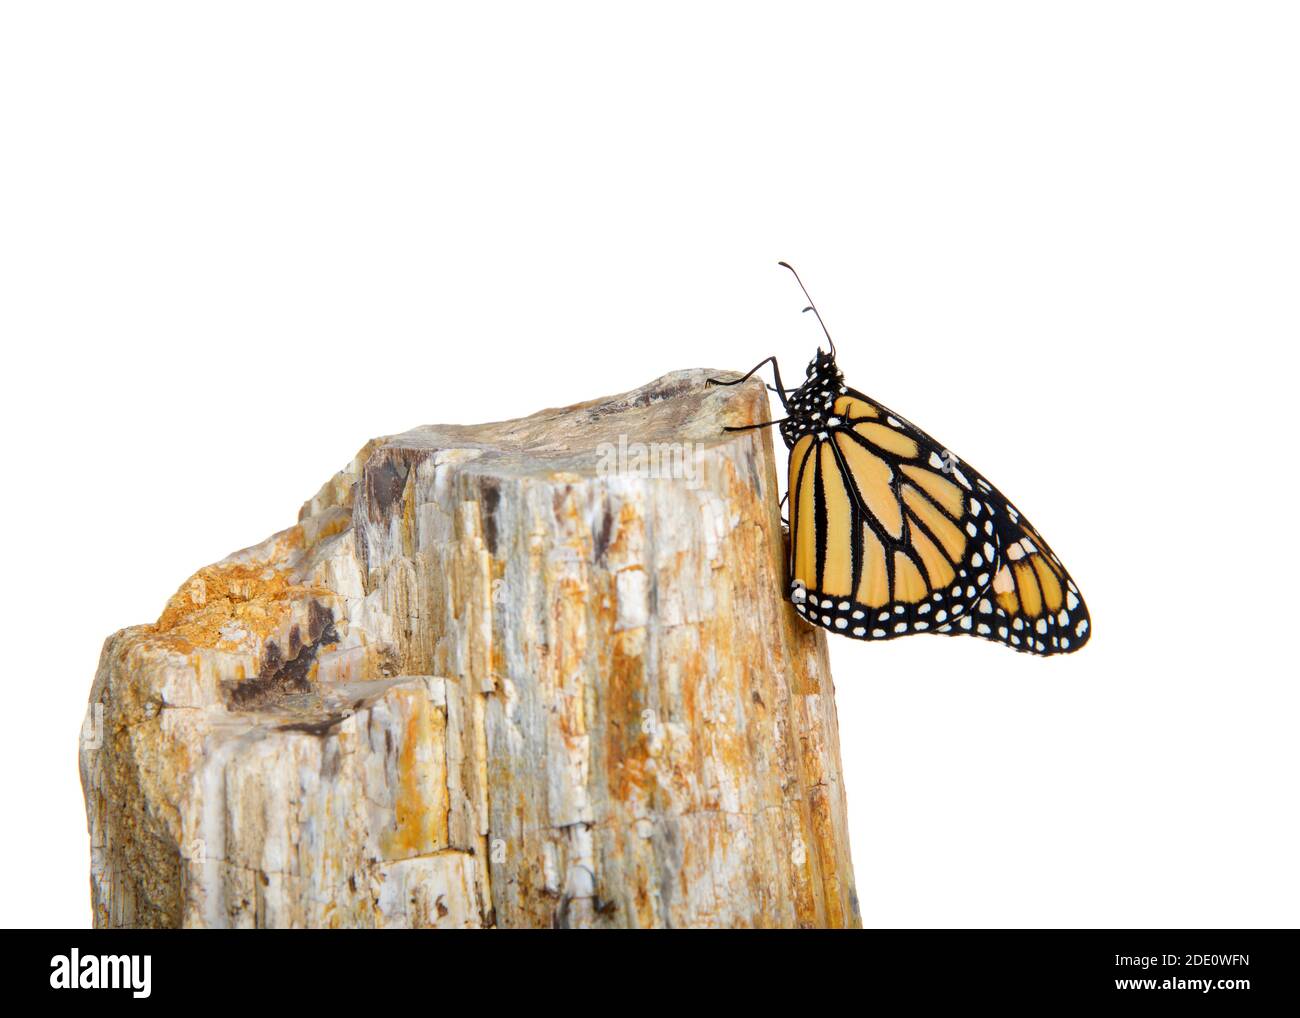 Nahaufnahme eines weiblichen Monarchschmetterlings, der sich an der Seite eines Felsens hält. Profilansicht, isoliert auf Weiß. Stockfoto